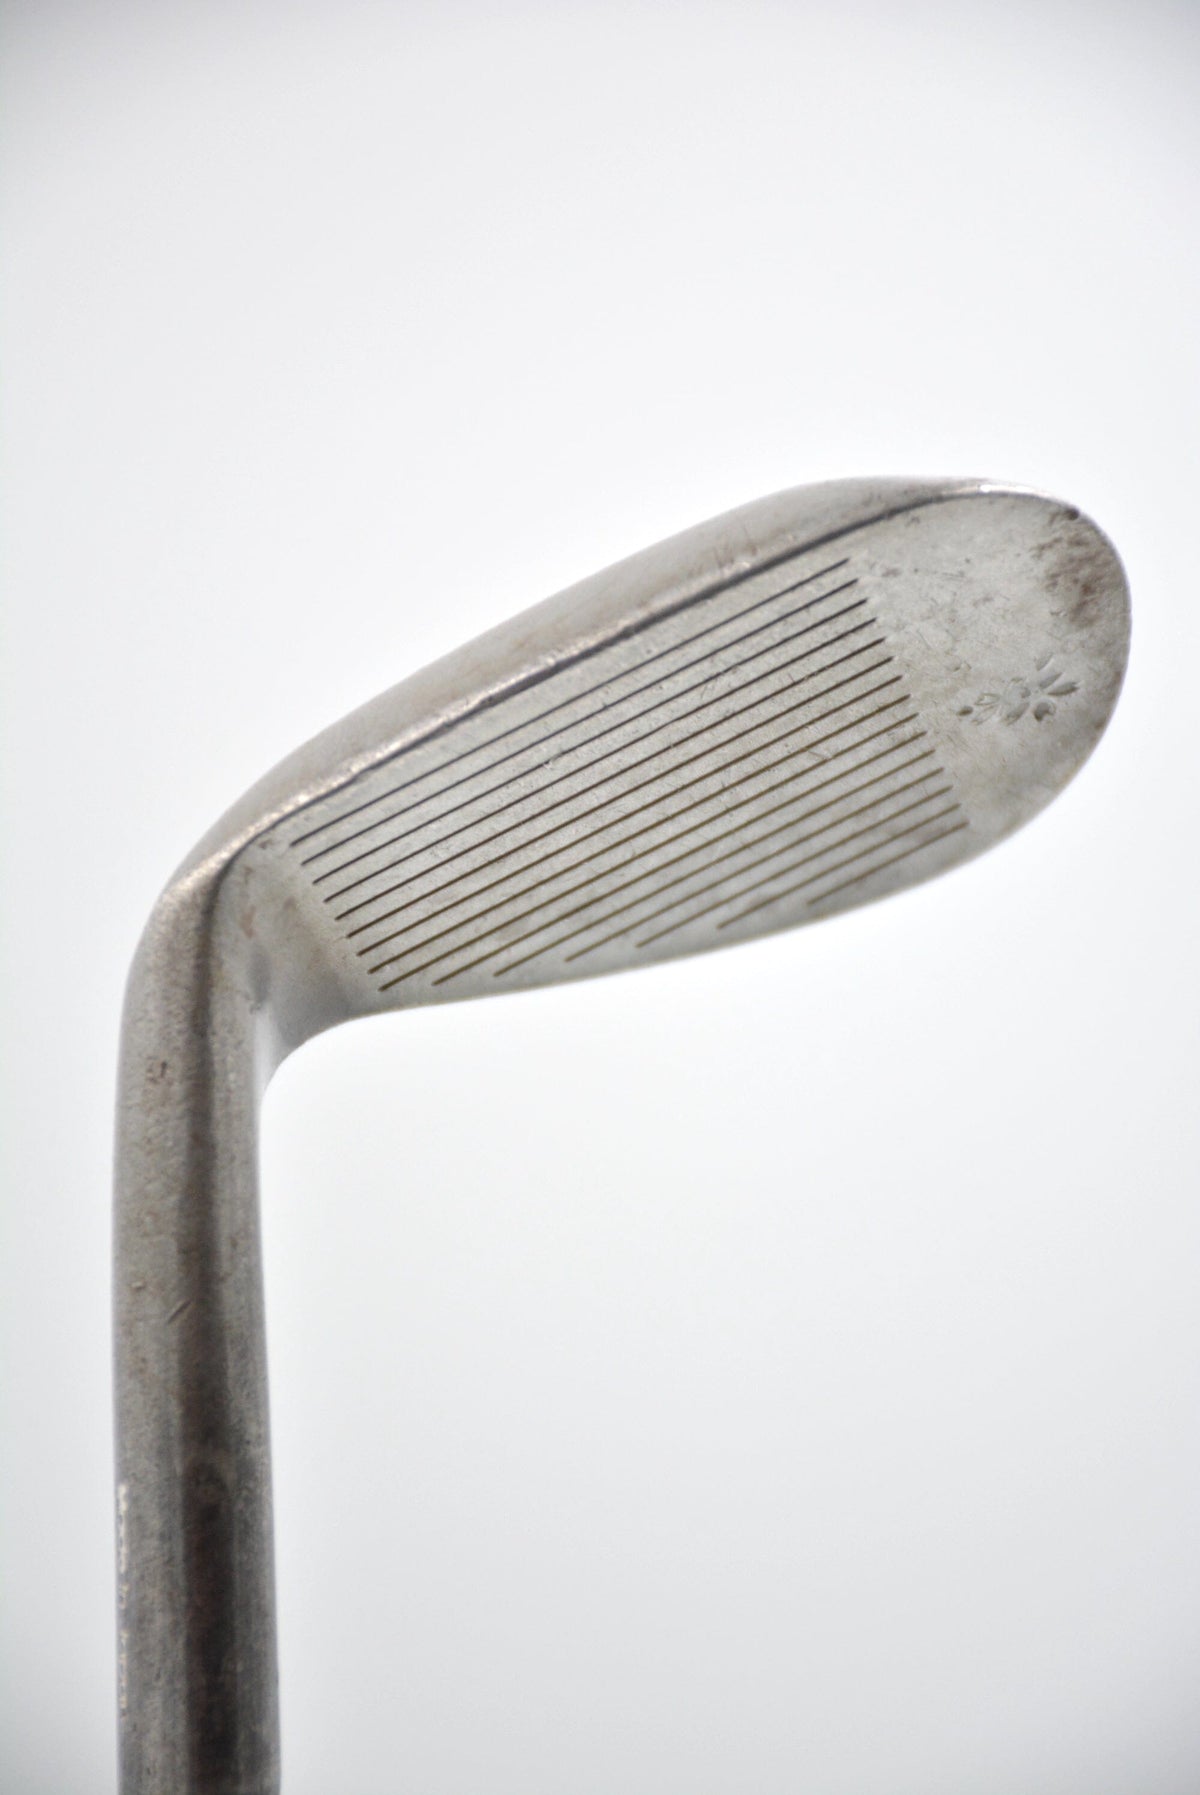 Honma 280W 56 Degree Wedge Wedge Flex Golf Clubs GolfRoots 